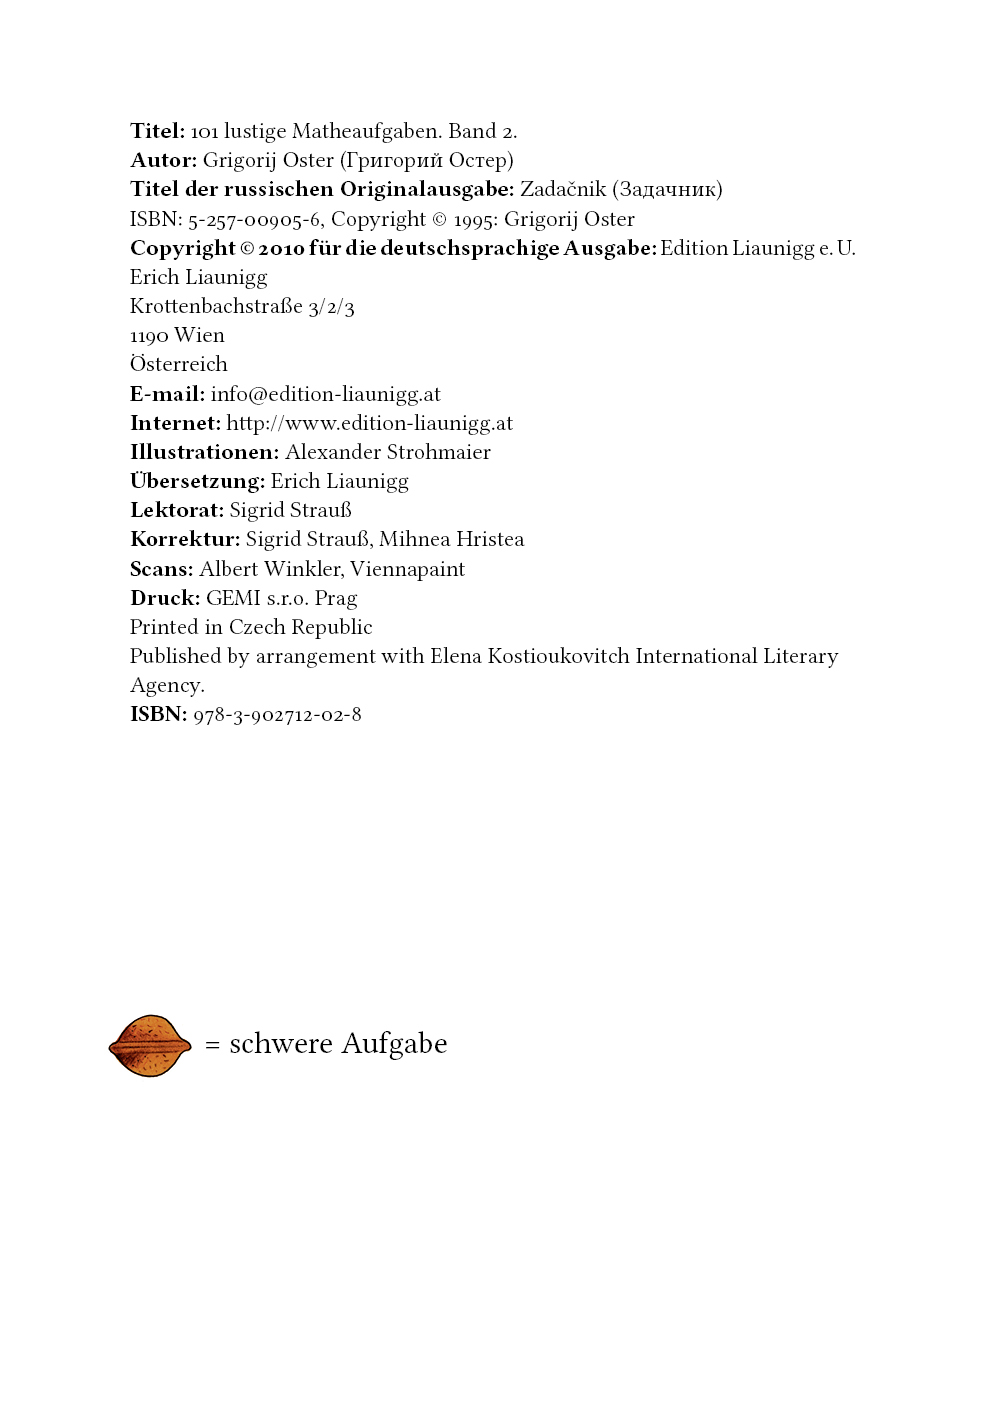 Matheaufgaben Bd. 2